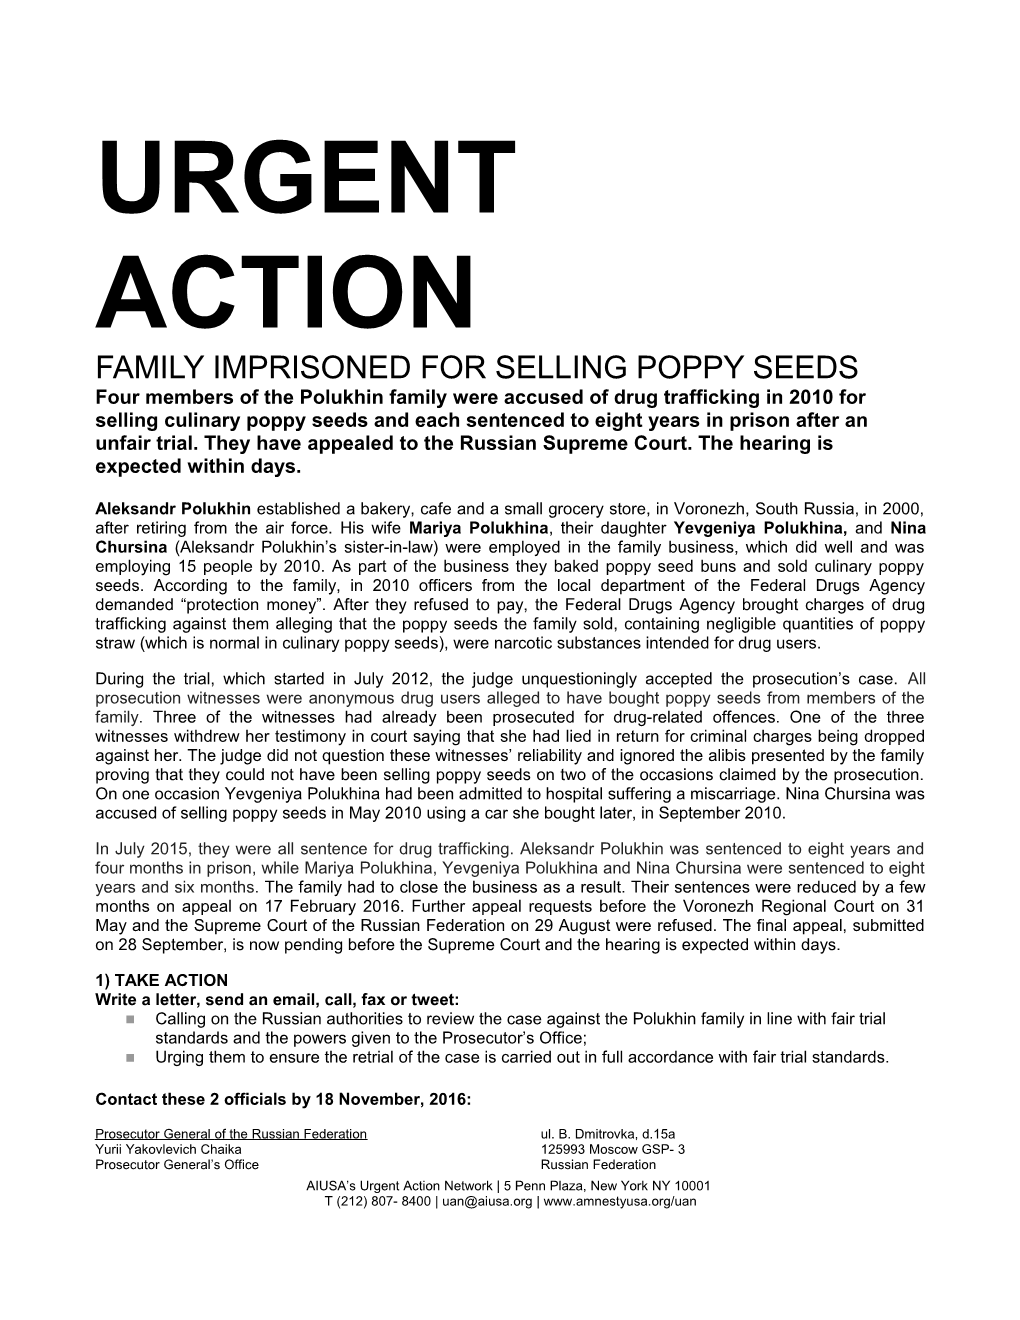 Family Imprisoned for Selling Poppy Seeds